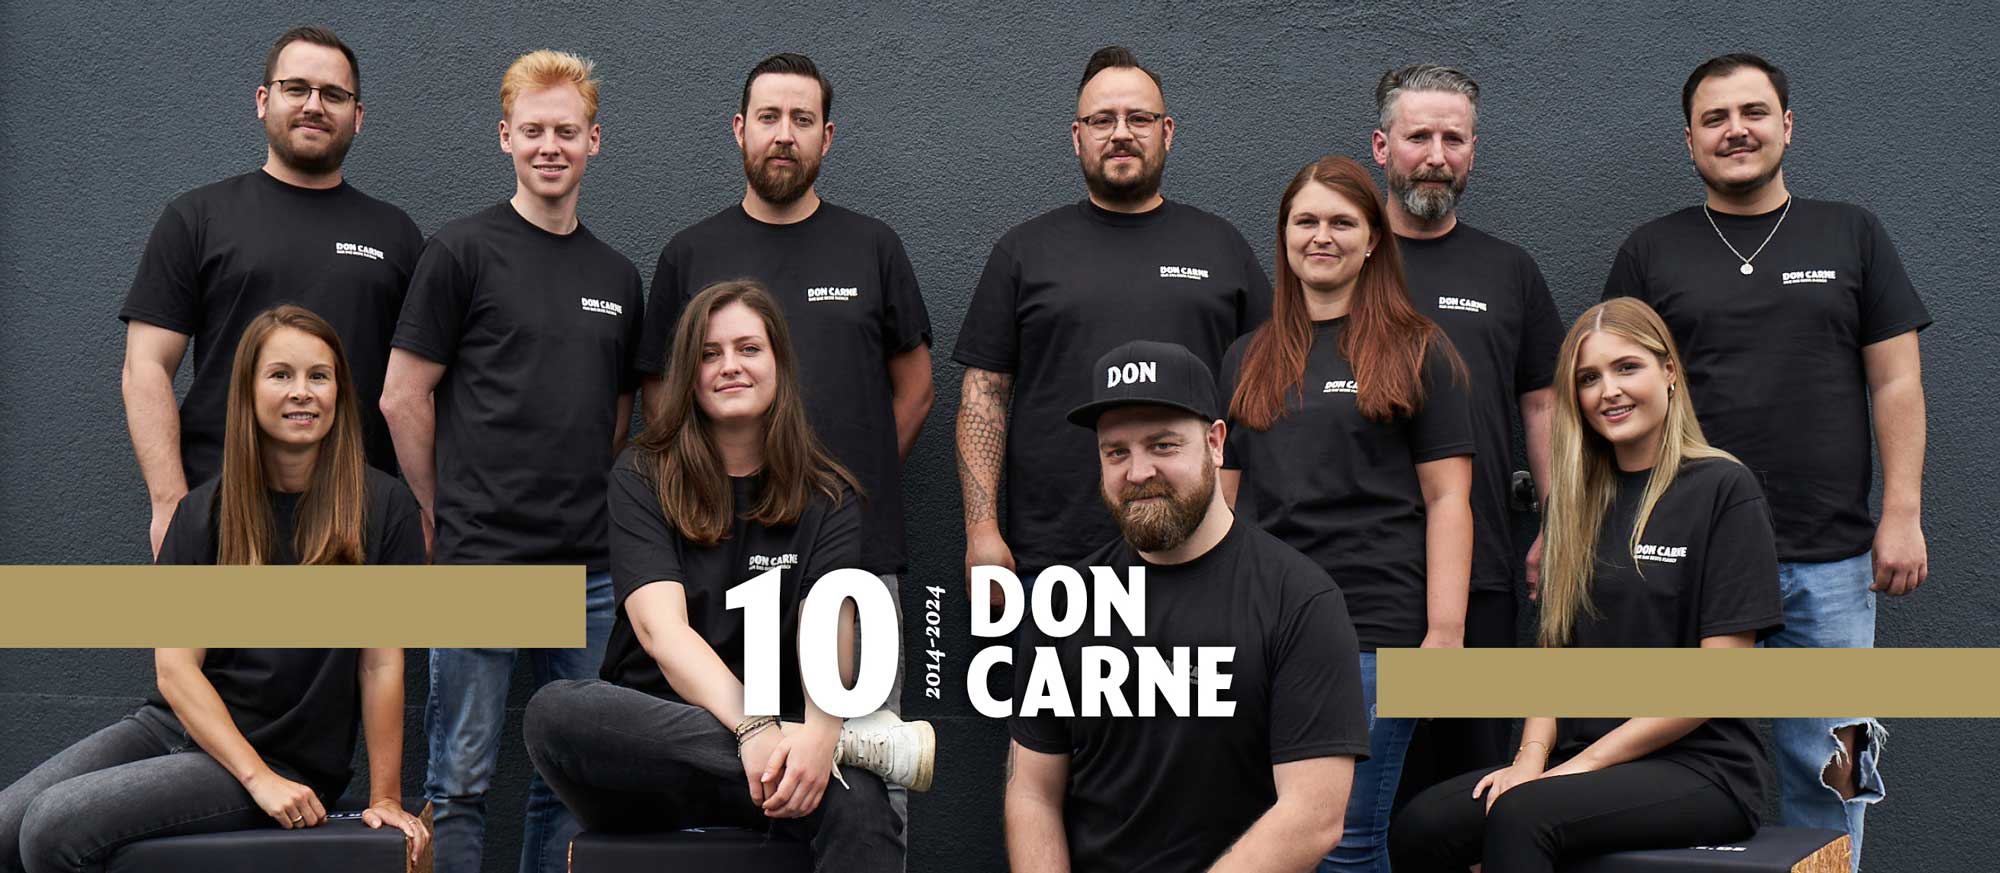 Das Team von Don Carne vor einer grauen Wand mit 10 Jahre Logo und Banderole